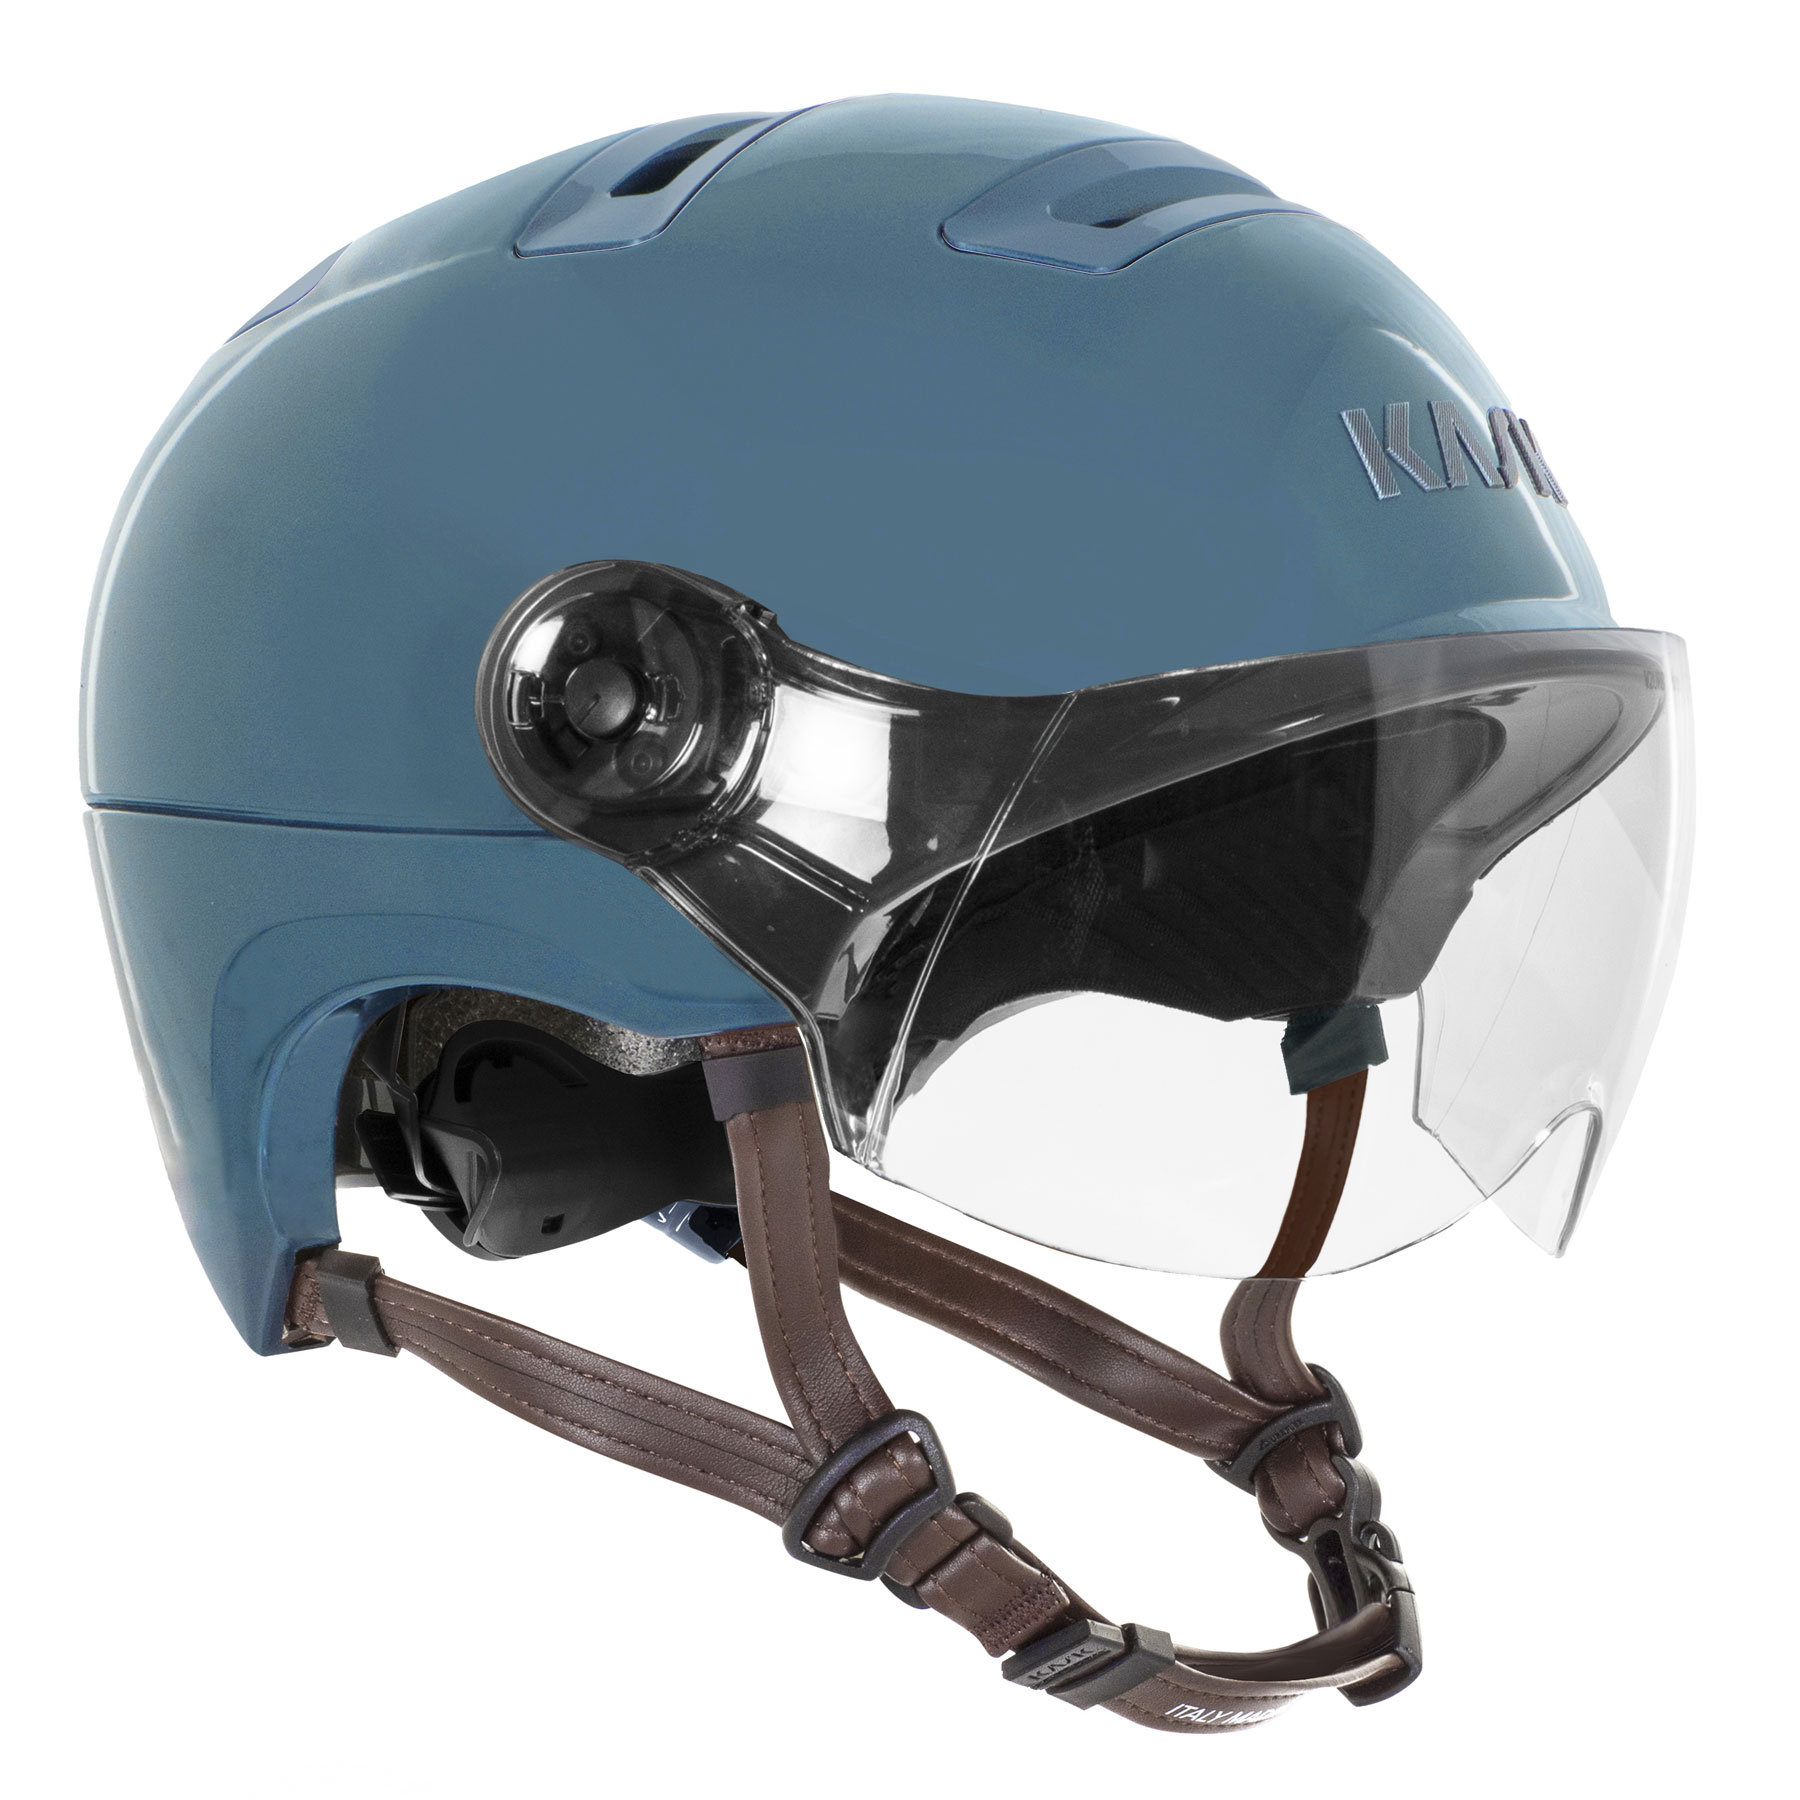 Picture of KASK Urban R WG11 Helmet - Sugar Paper Blue